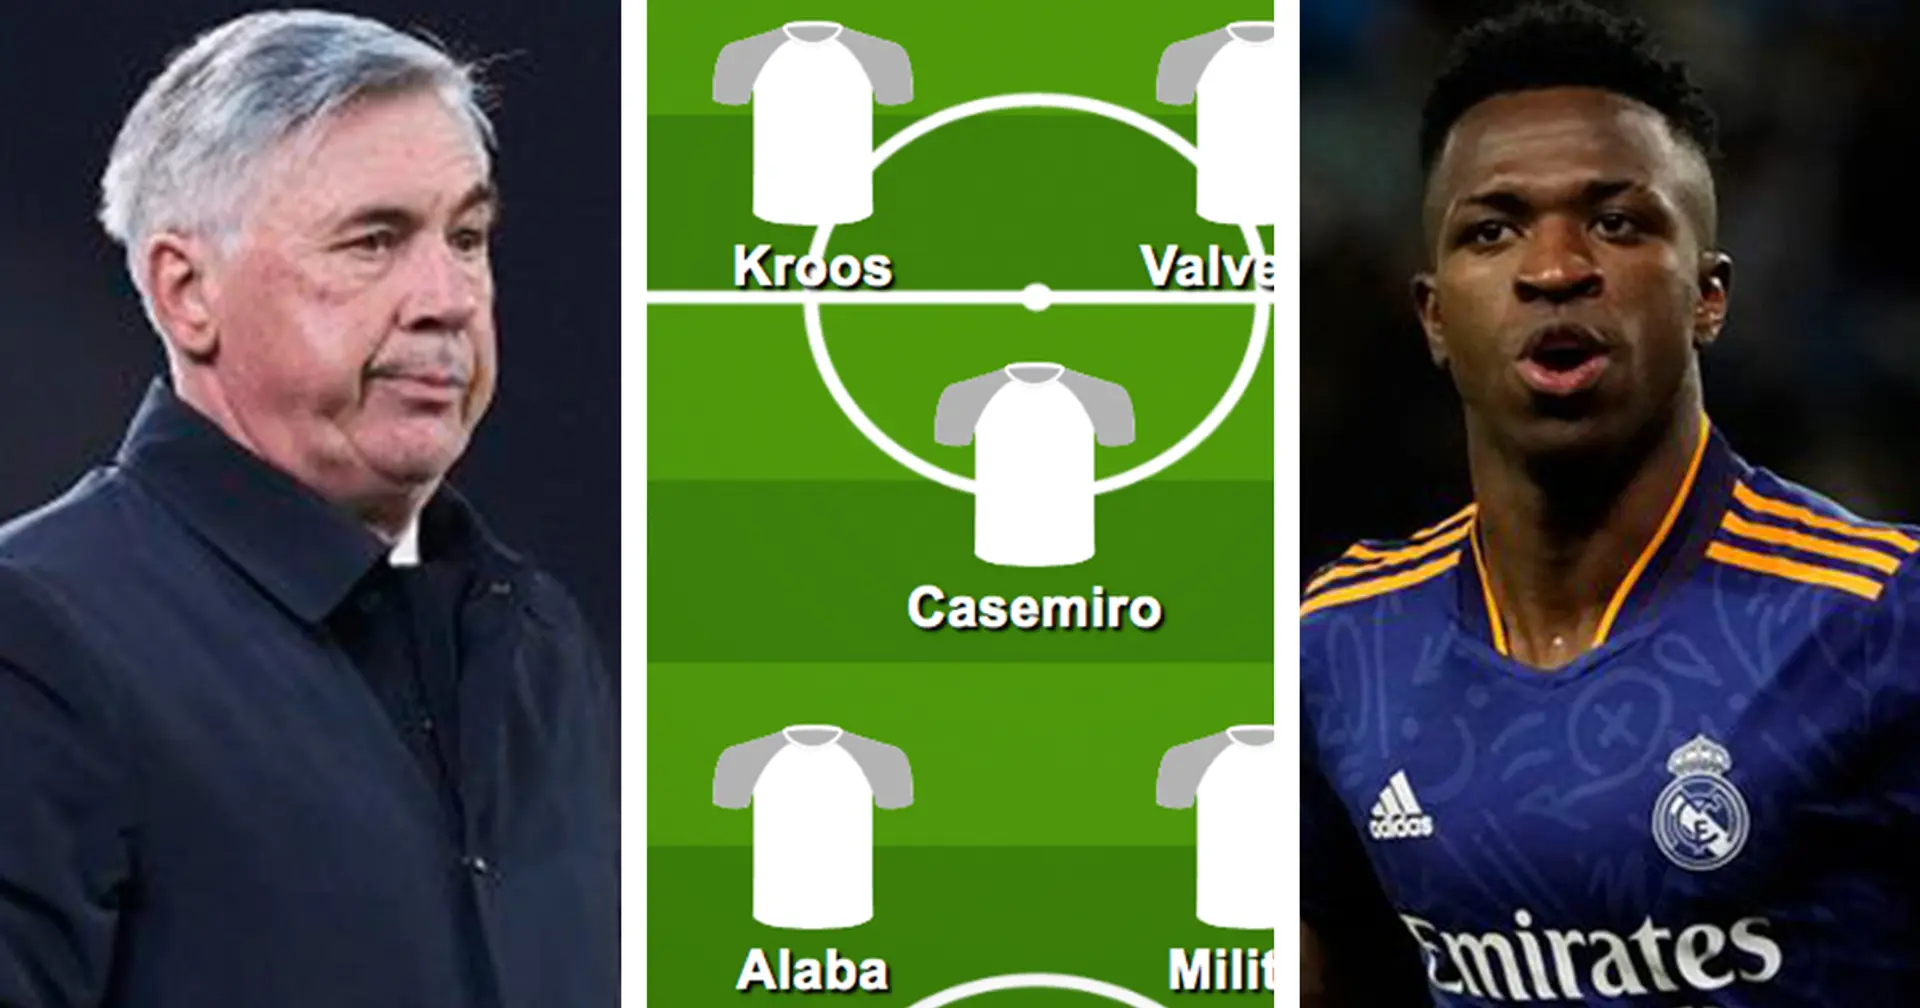 ¿Con Valverde? Elige tu XI favorito del Real Madrid para el partido vs Villarreal entre 3 opciones